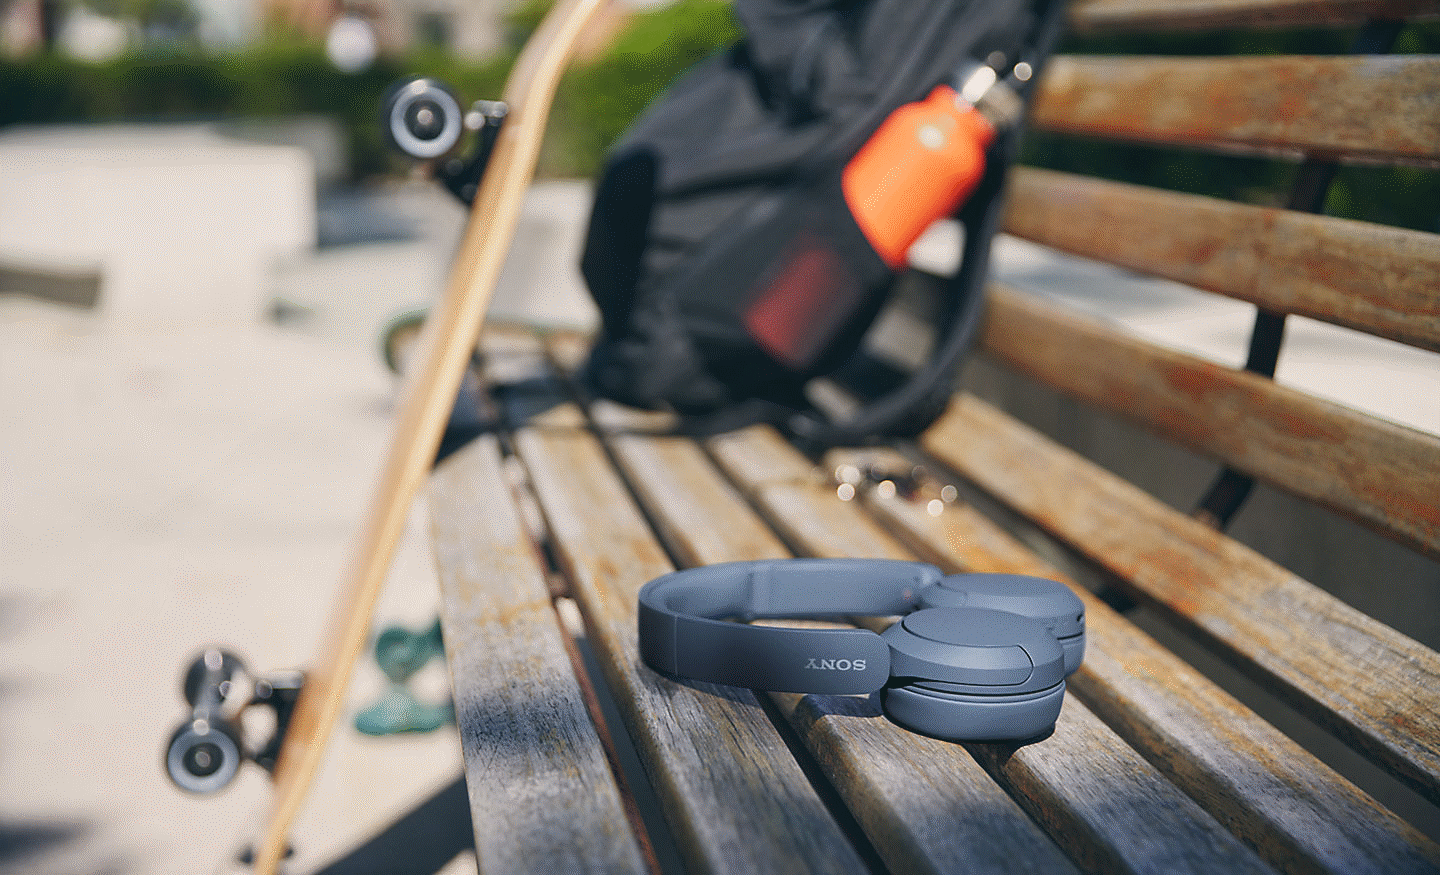 Изображение на чифт черни слушалки Sony WH-CH520, оставени върху пейка, като във фона се вижда раница и скейтборд